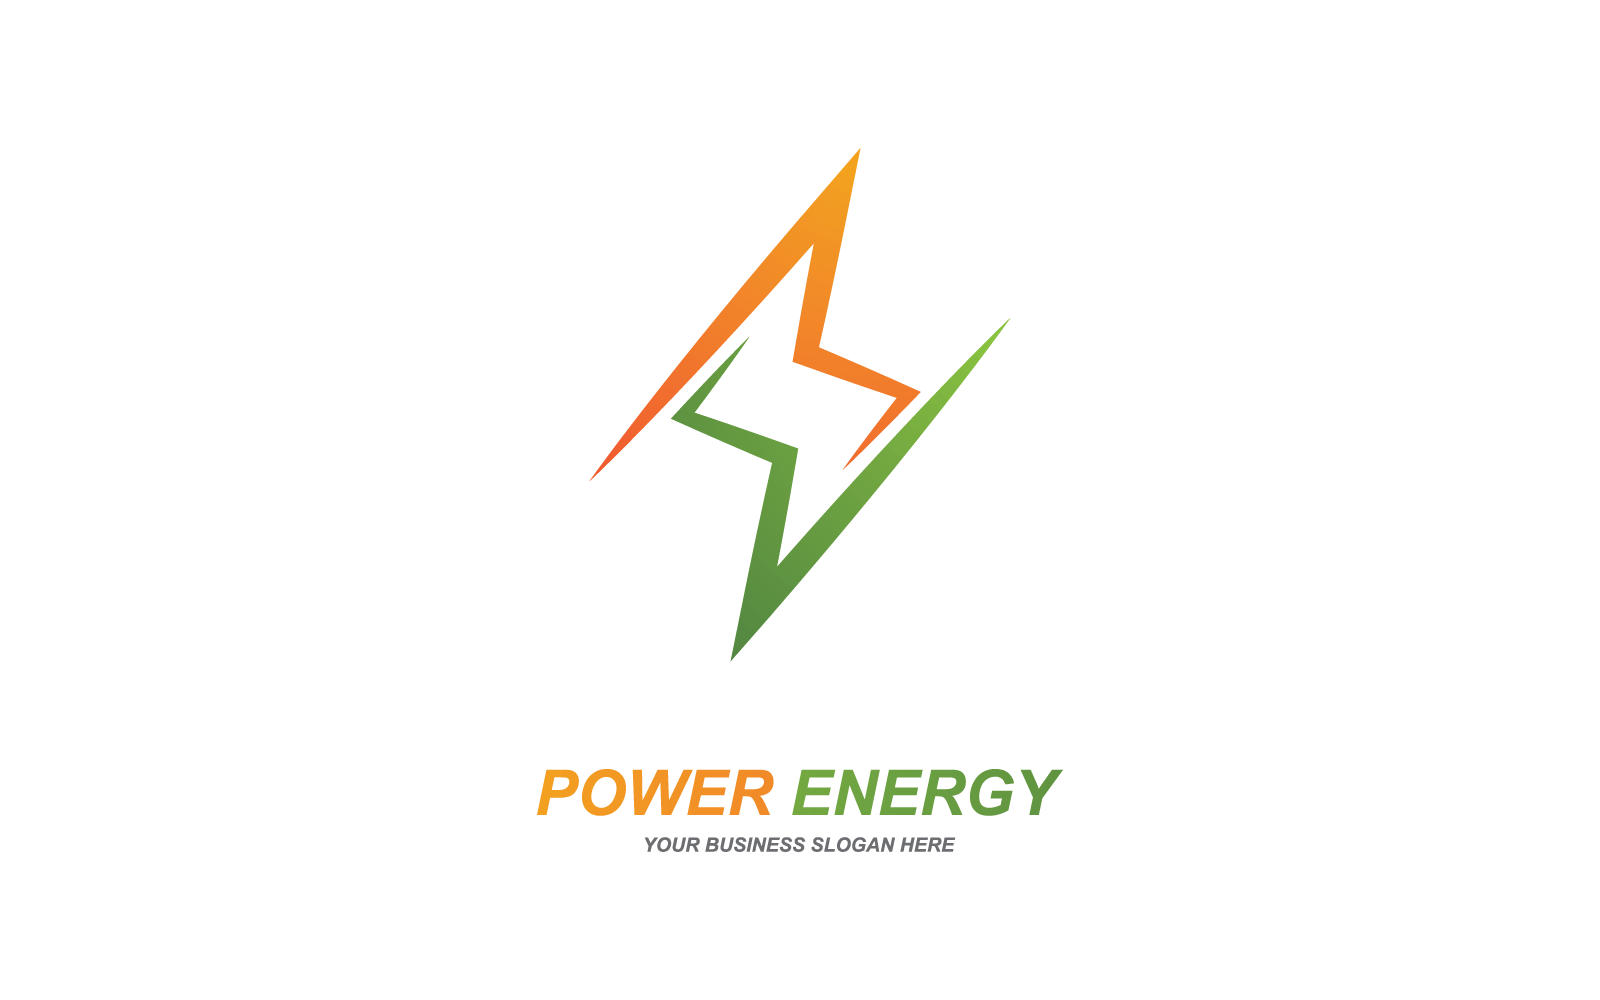 Power lightning power energy logo flat design